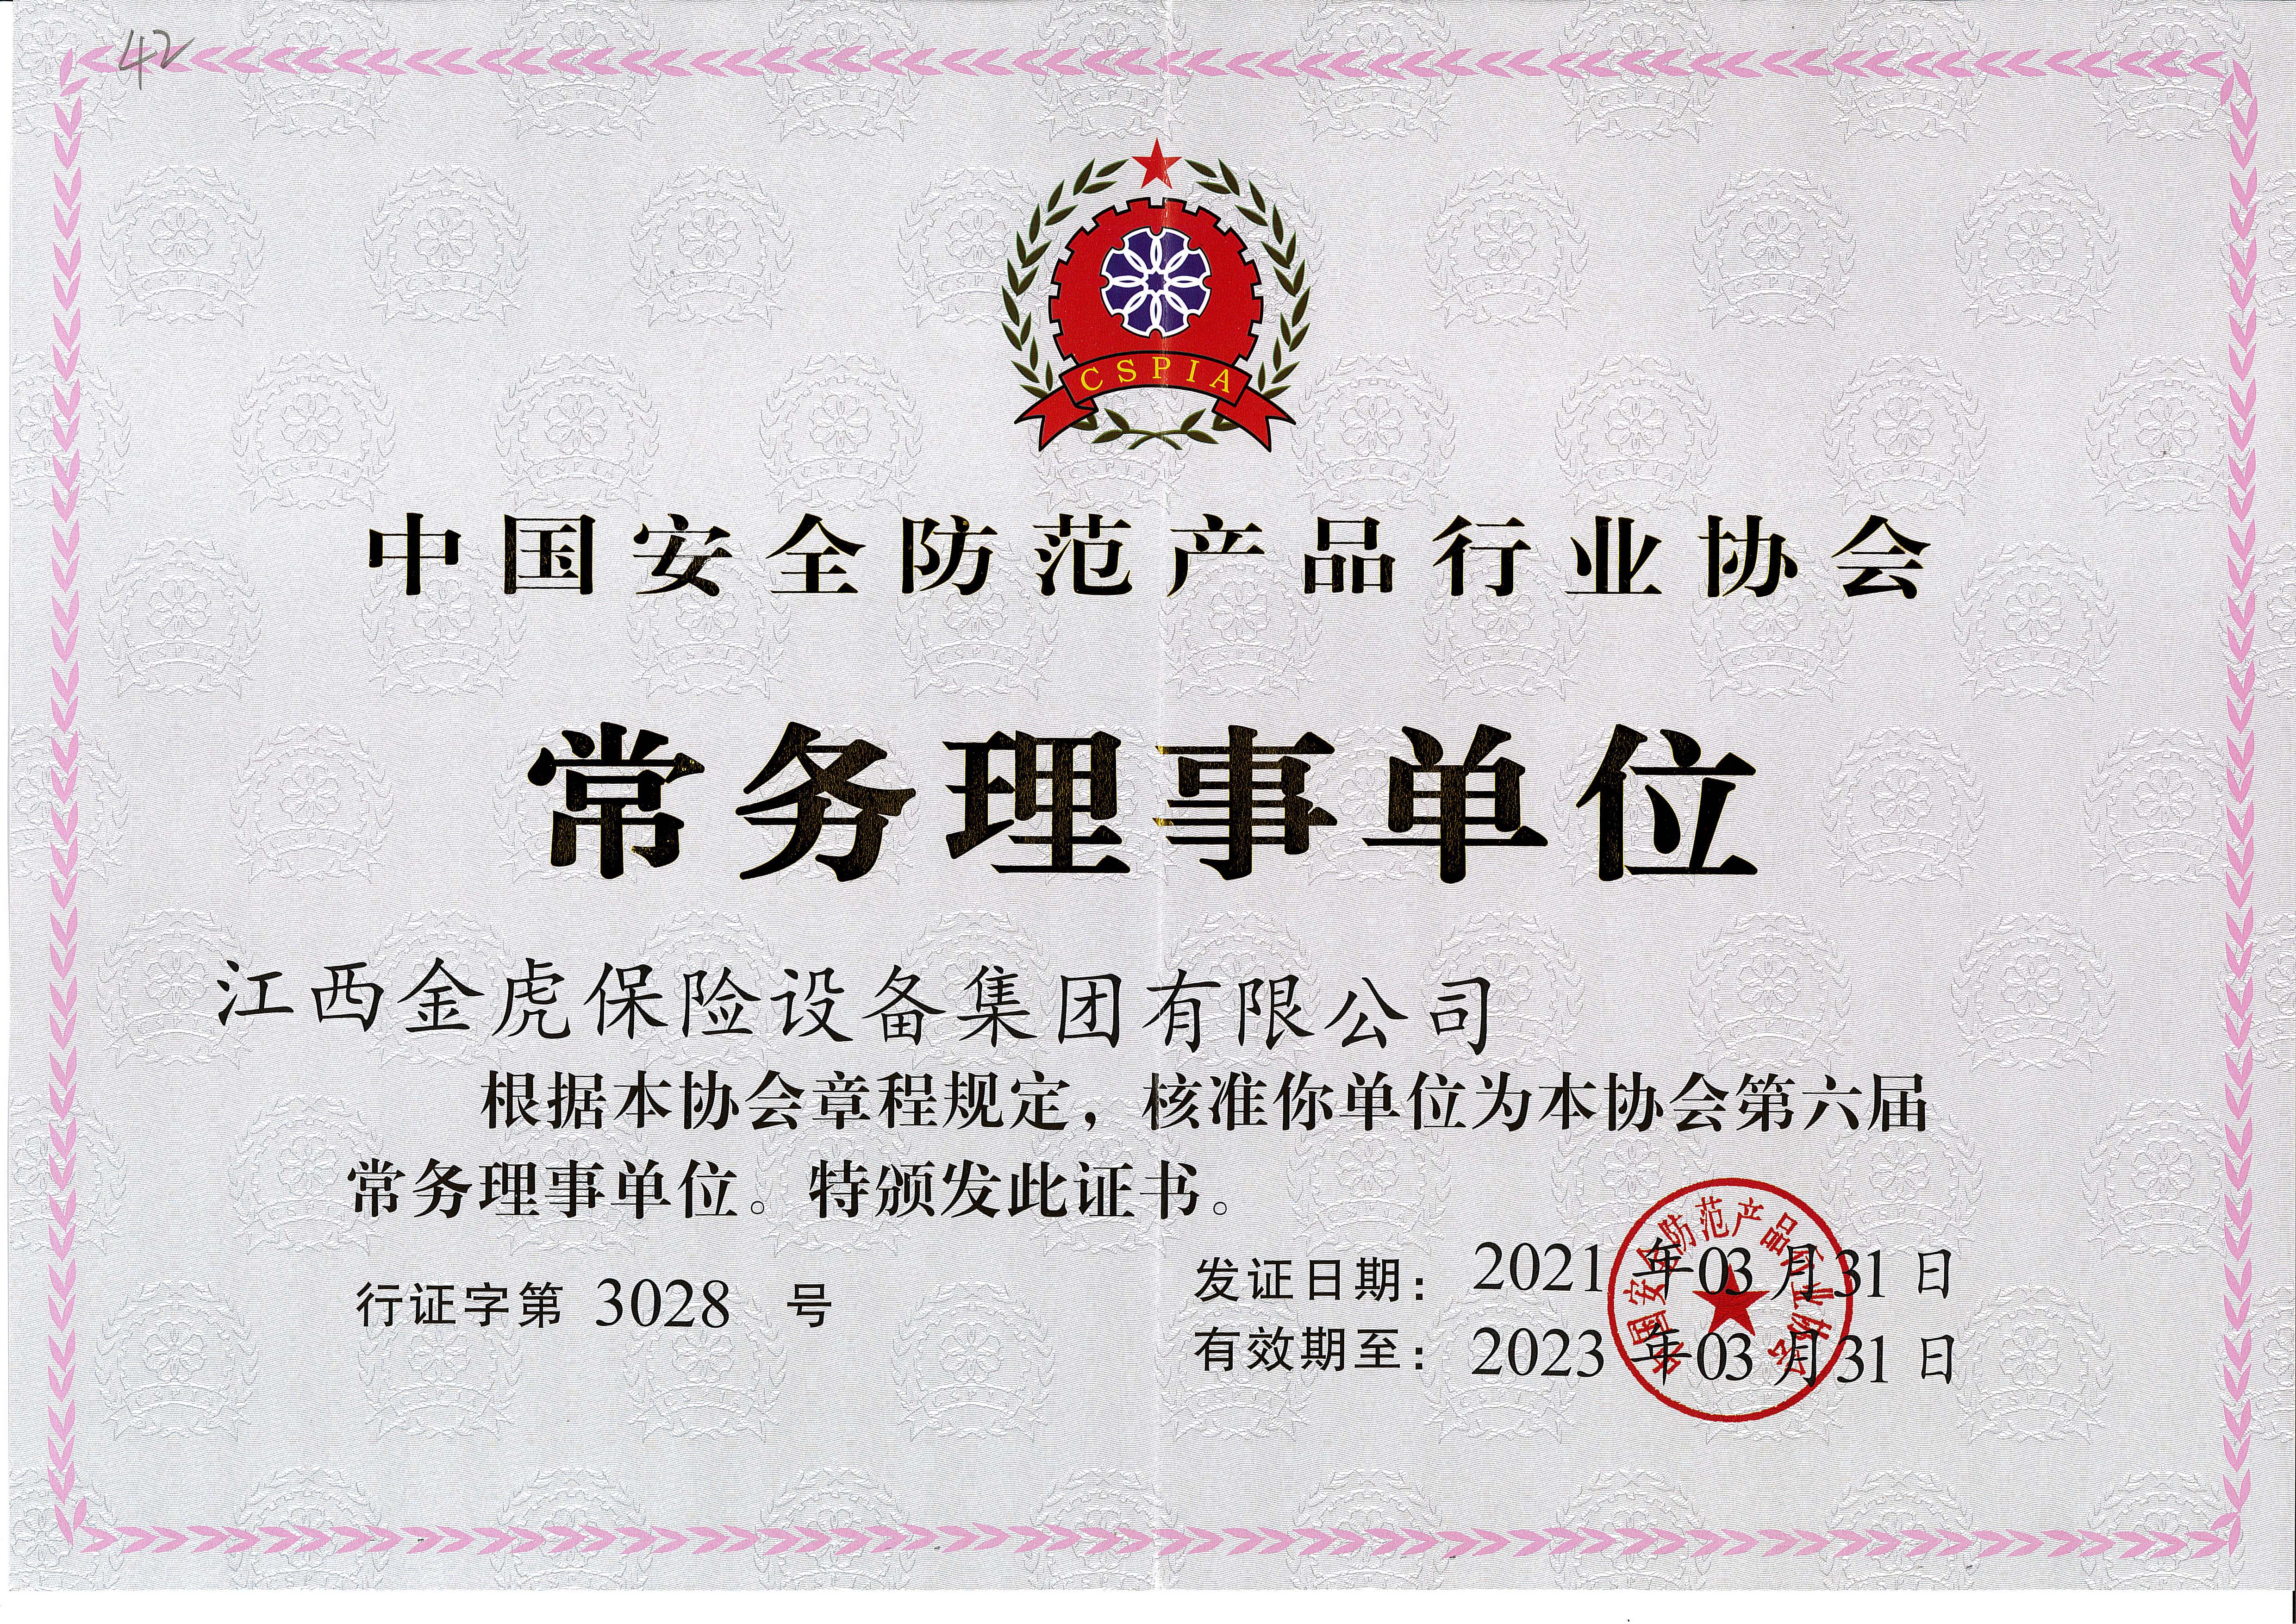 中国安全防范产品行业协会常务理事单位